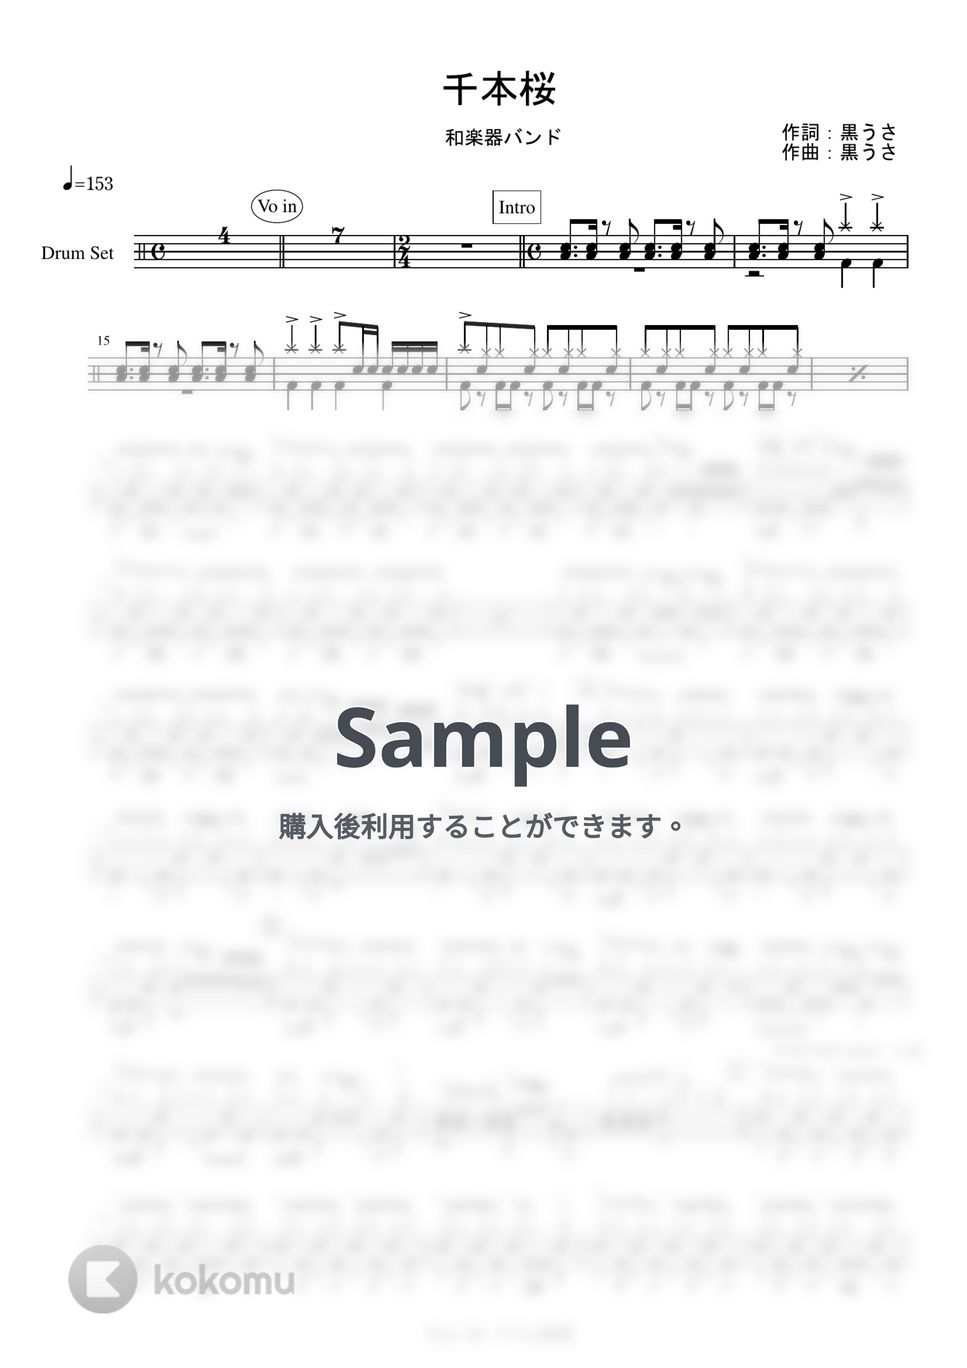 和楽器バンド - 千本桜 by Cozy Up ドラム教室